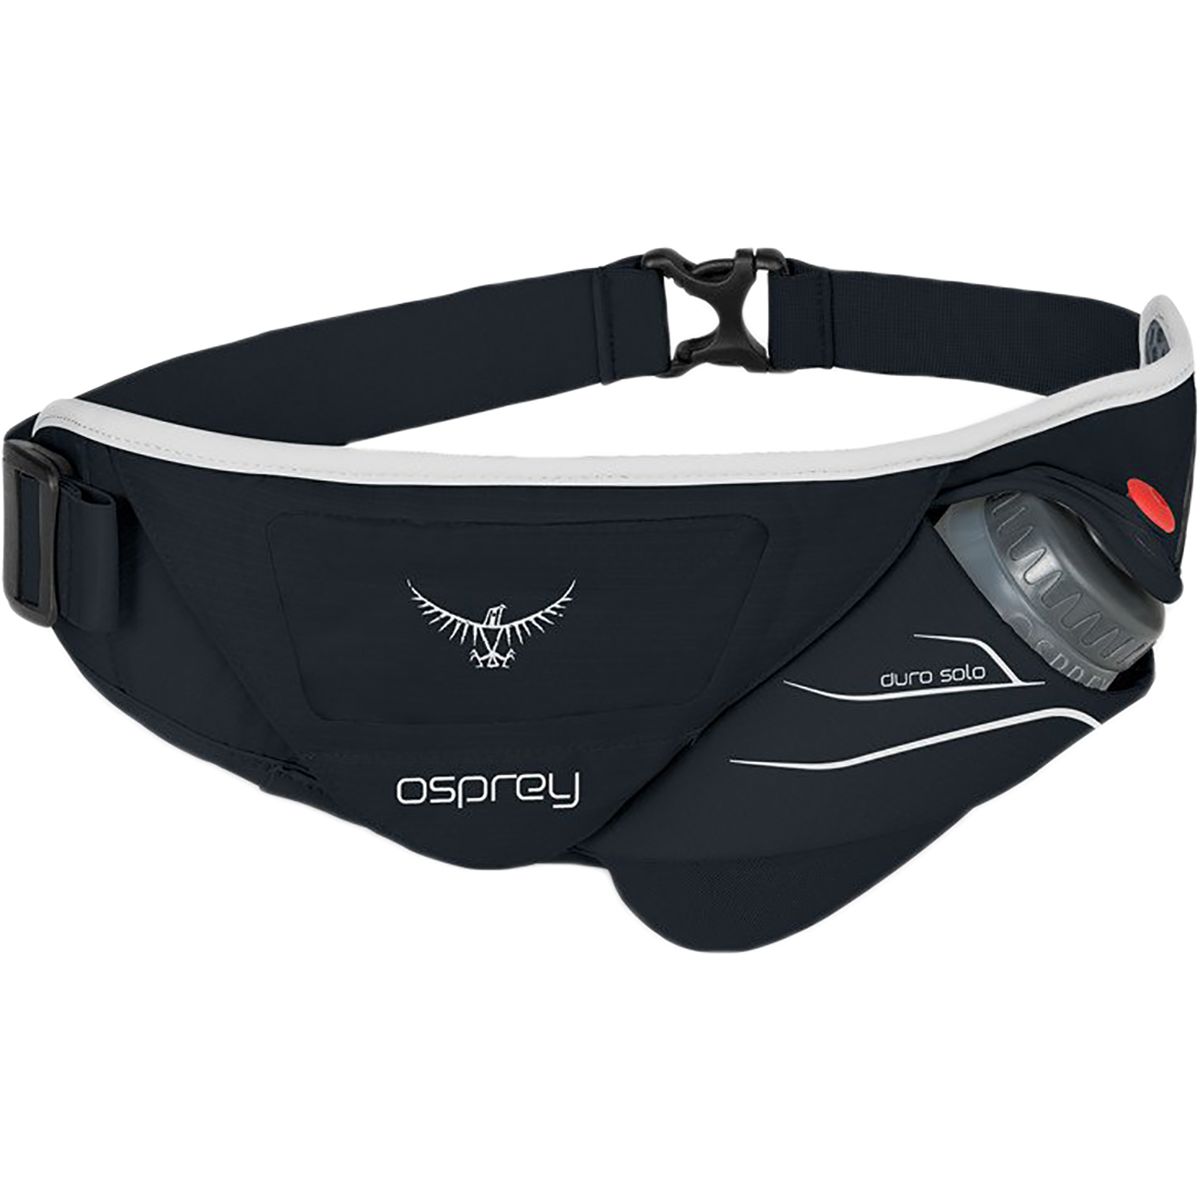 Osprey Packs Duro Solo 0.5L Belt